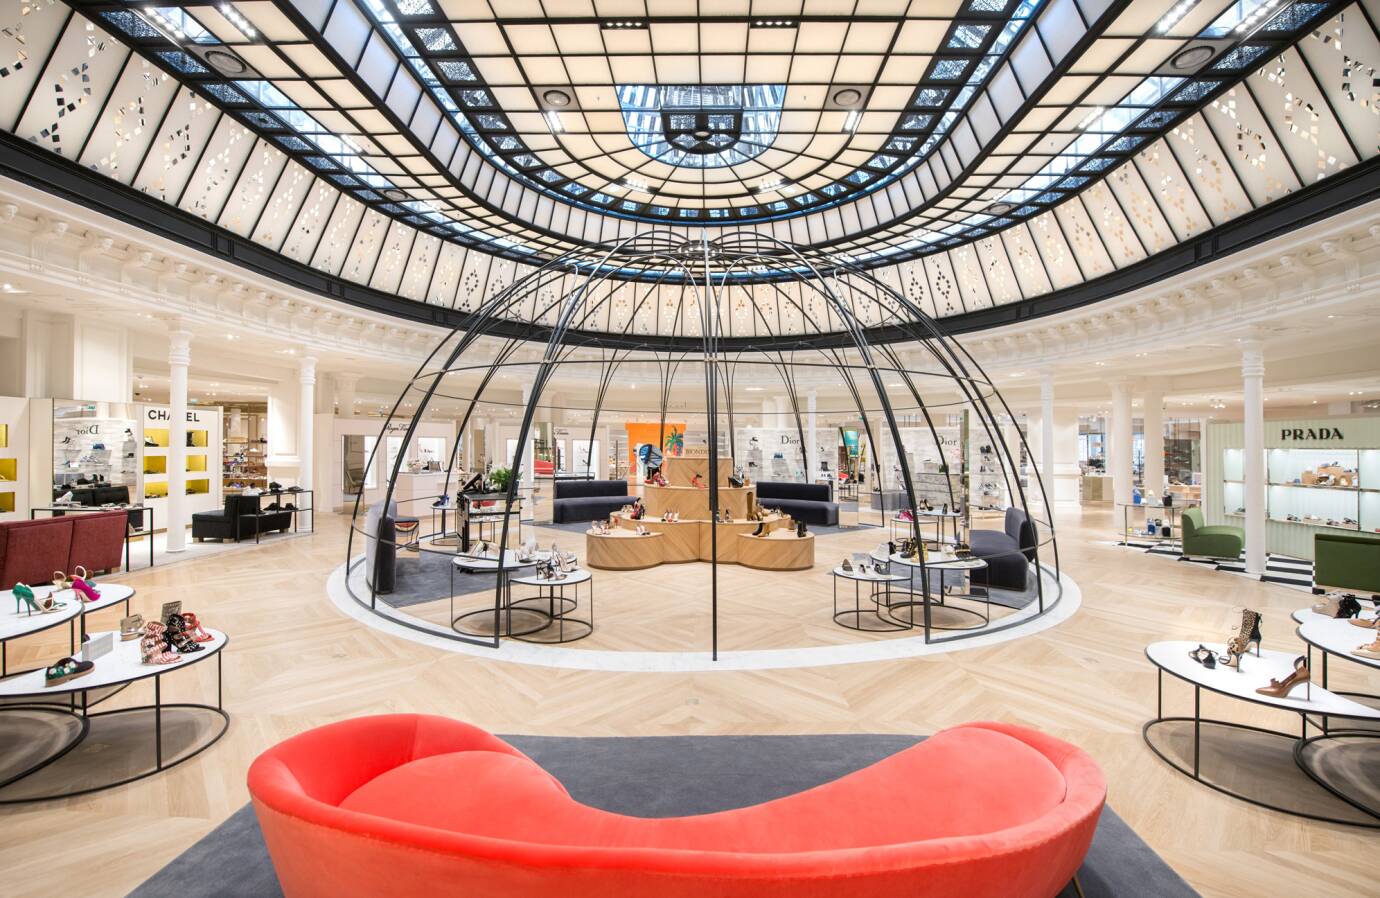 Paris Le Bon Marche - Interior of Le Bon Marche department store